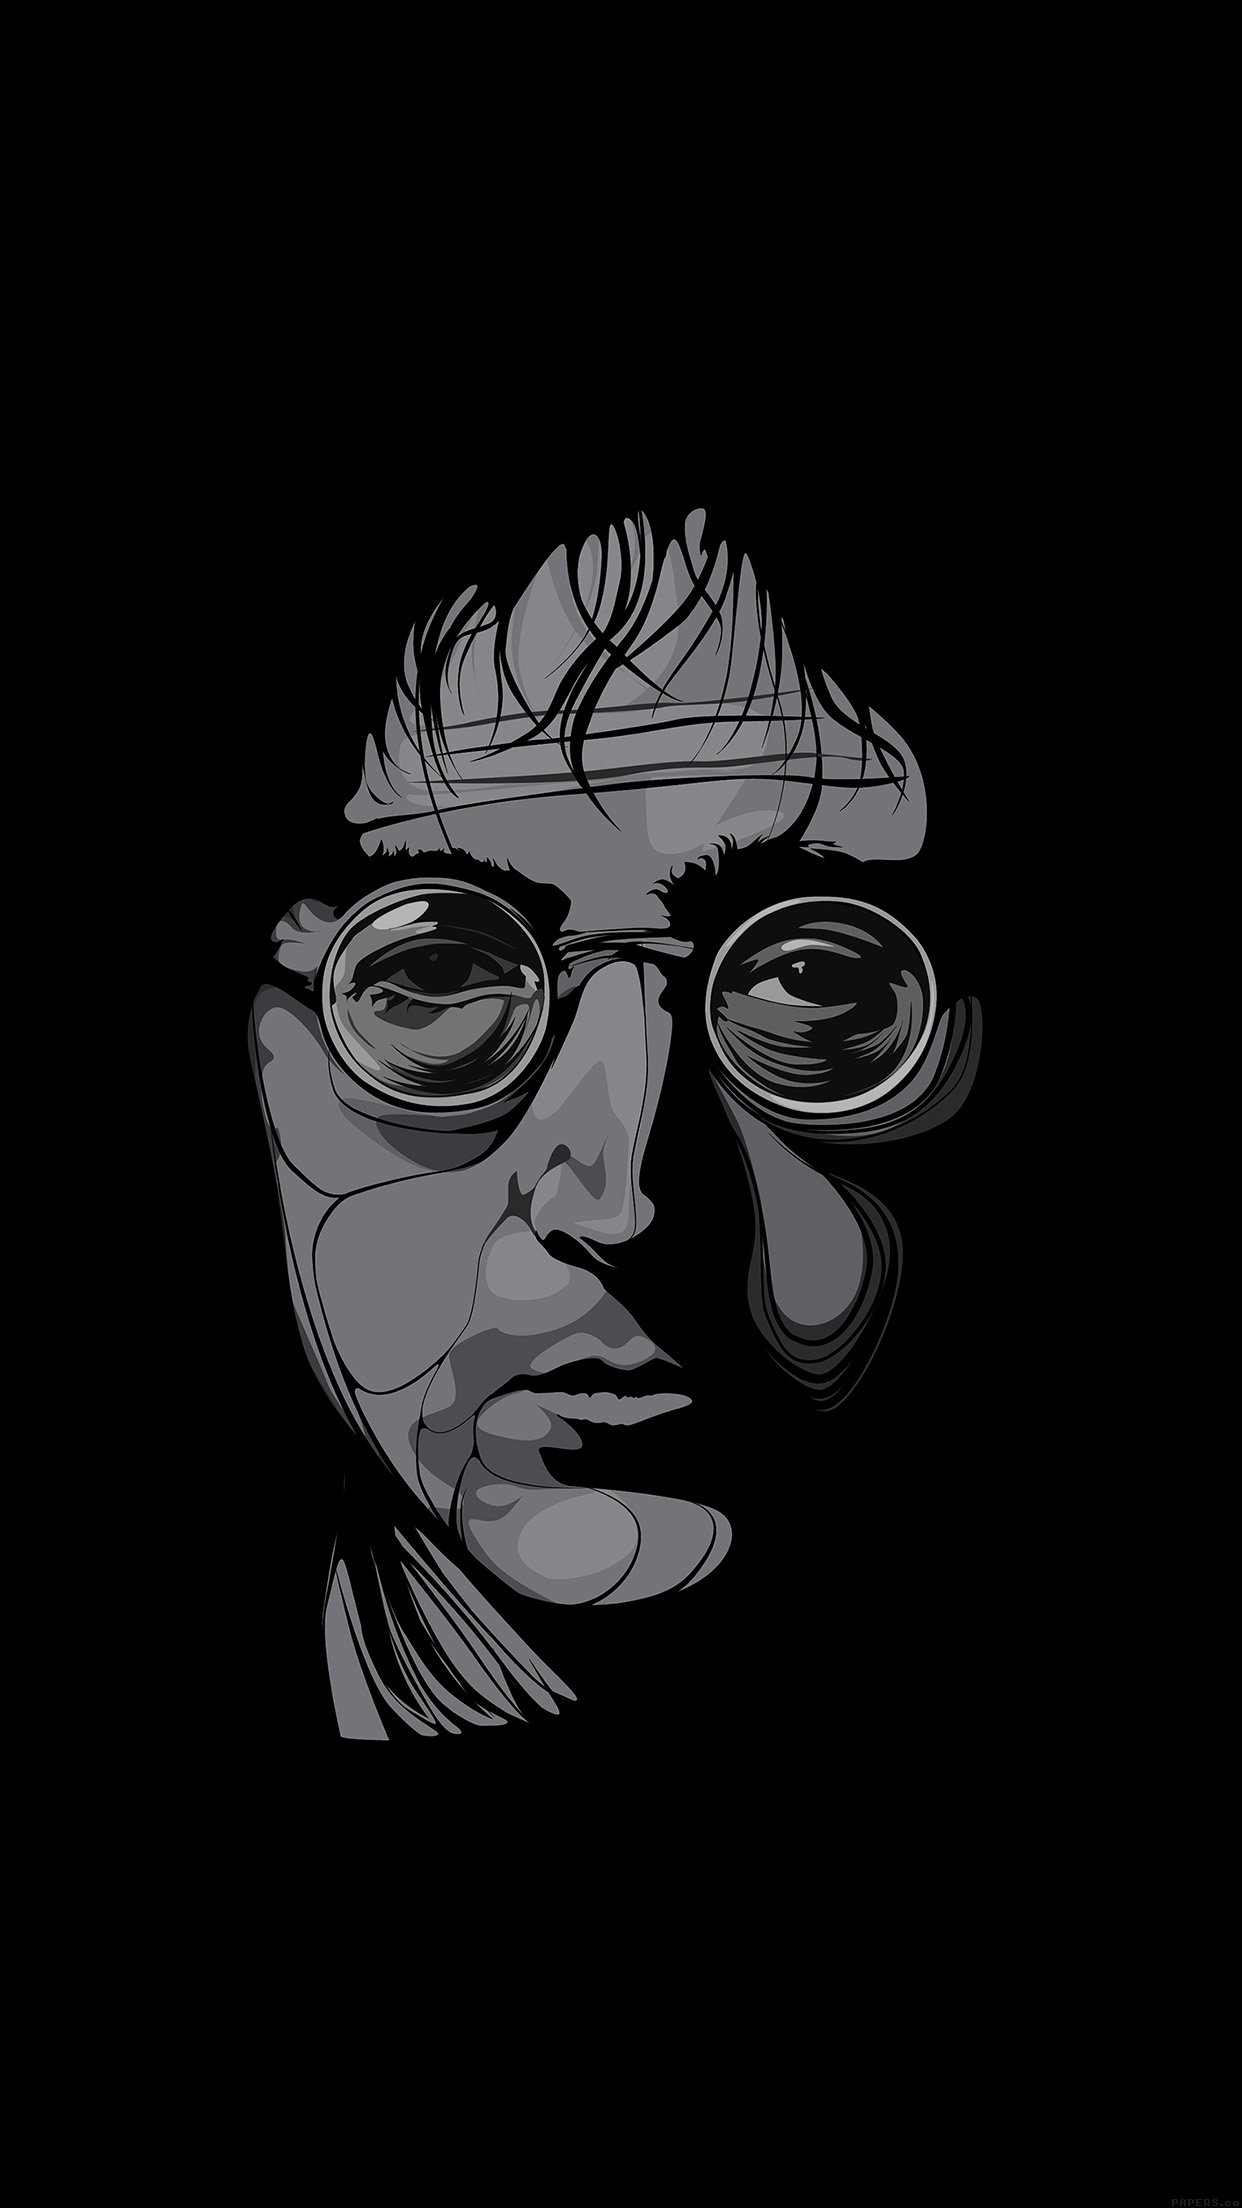 John Lennon Illust Art Music Android Wallpaper - John Lennon Wallpaper Hd - HD Wallpaper 